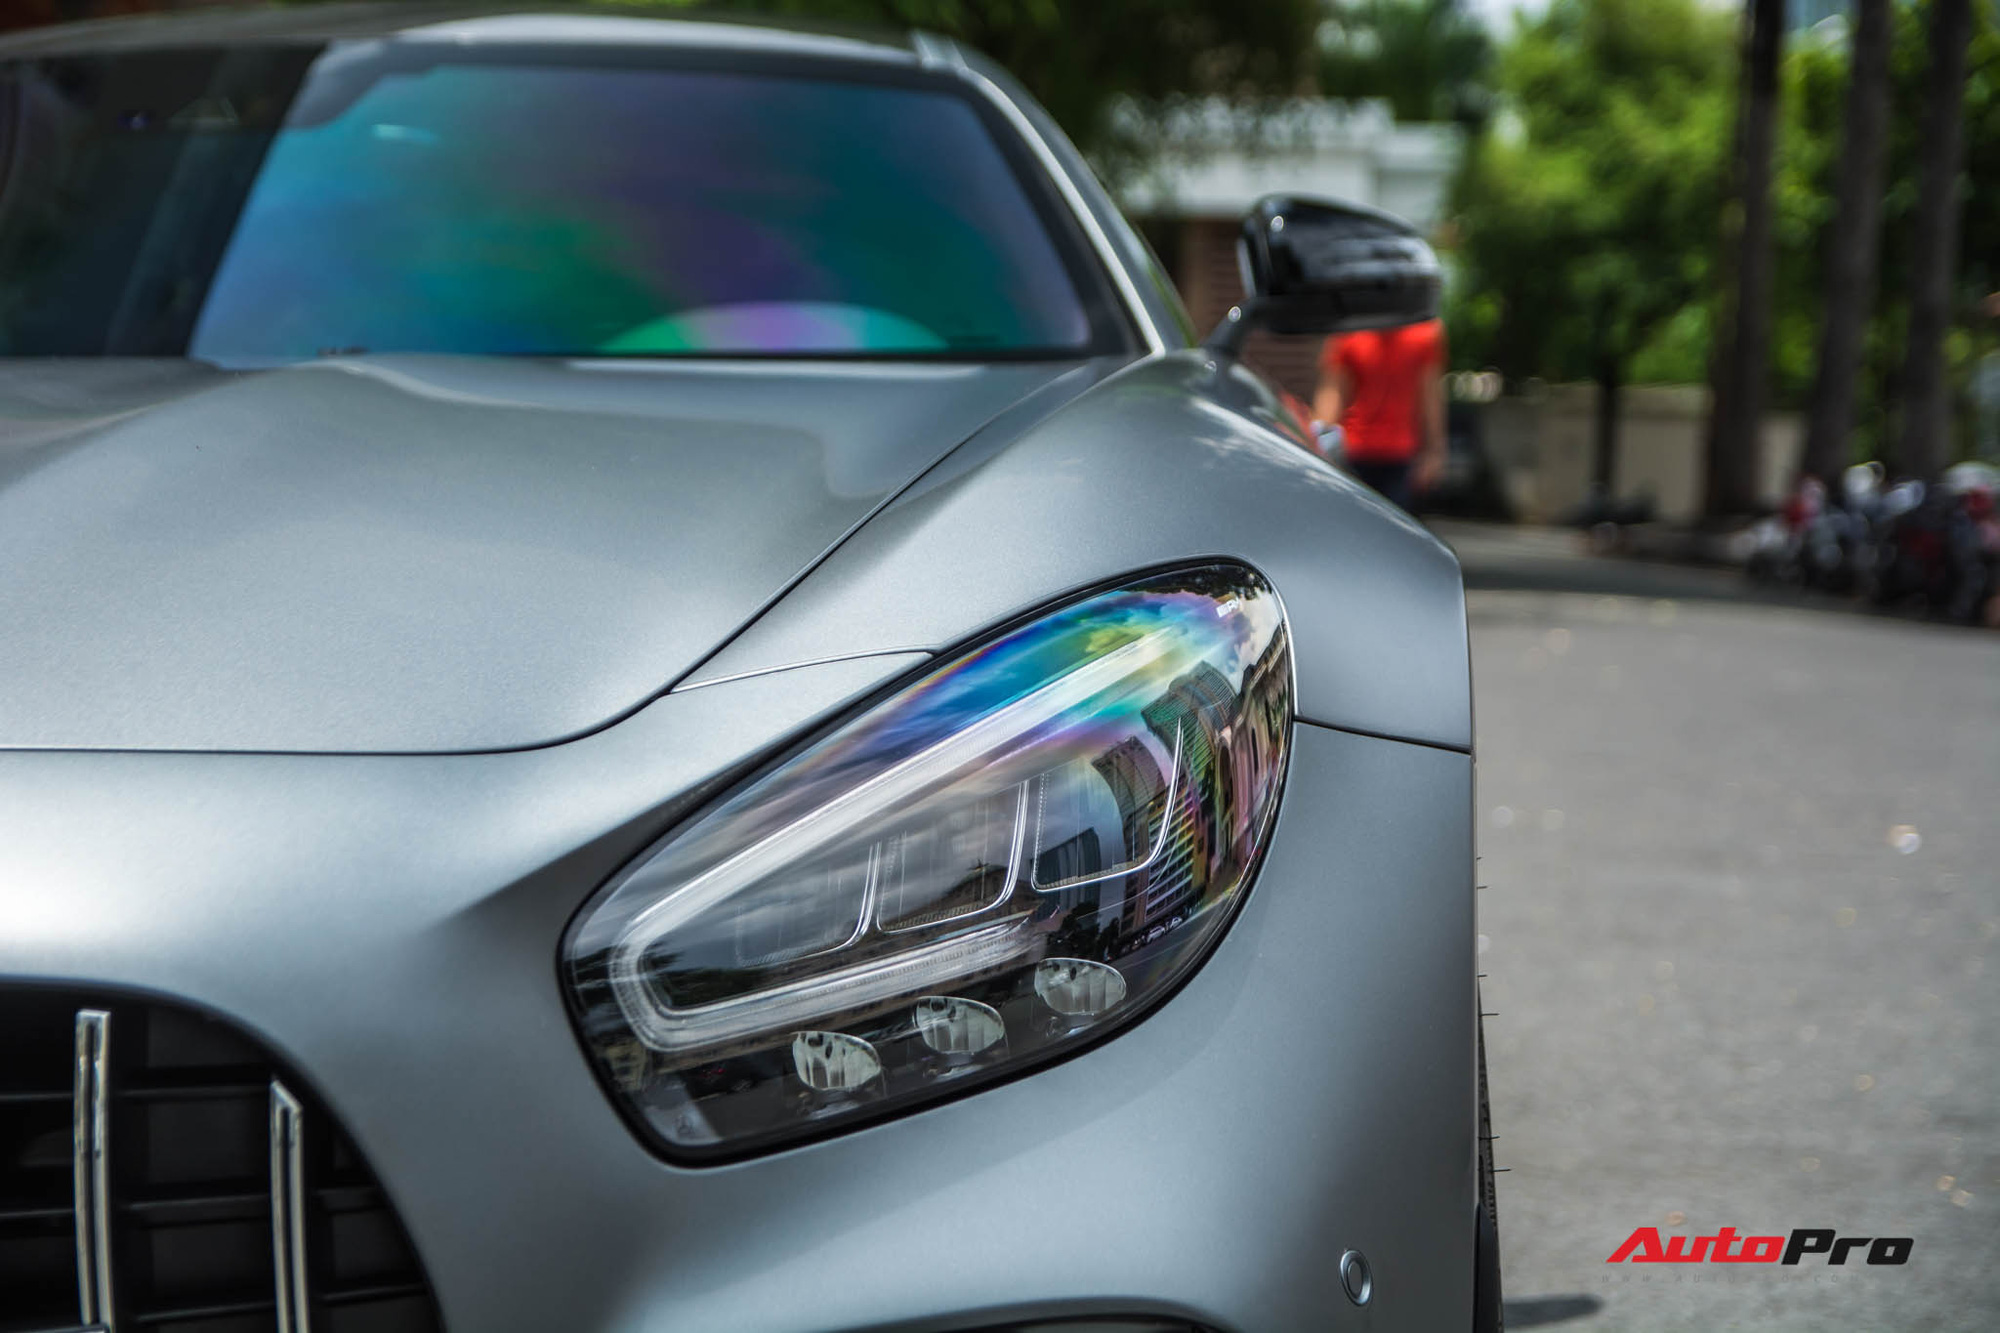 Bóc tách tùy chọn trên Mercedes-AMG GT R của doanh nhân Nguyễn Quốc Cường: Riêng màu sơn đã ngang ngửa một chiếc Honda SH - Ảnh 3.